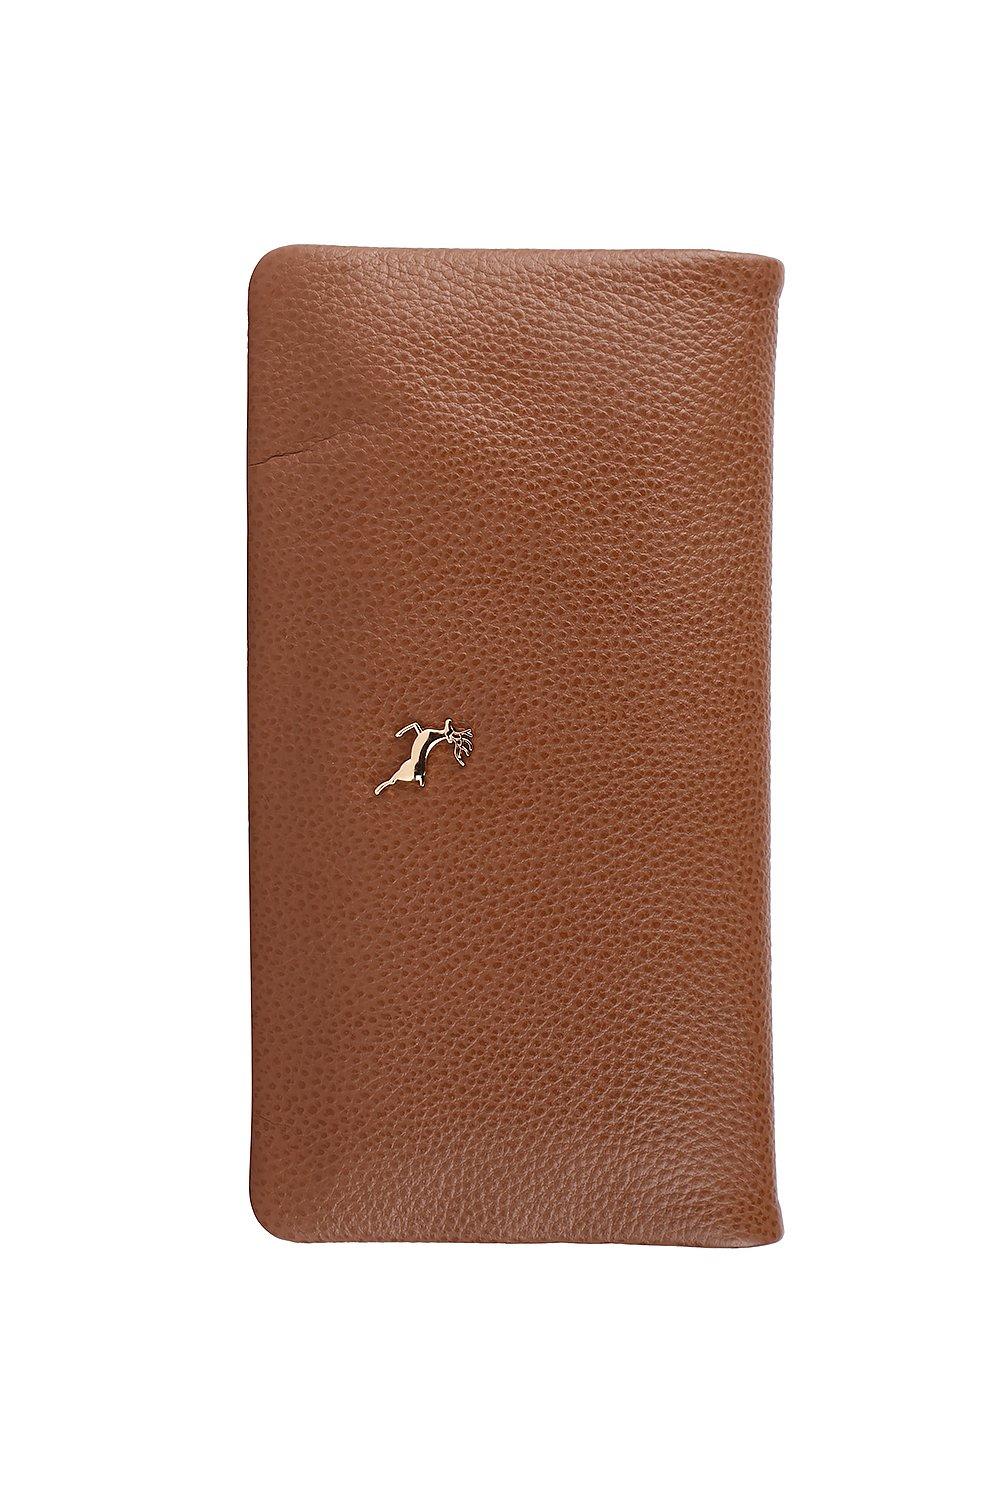 Большой кошелек для утренника из натуральной кожи «Liberty» Ashwood Leather, коричневый